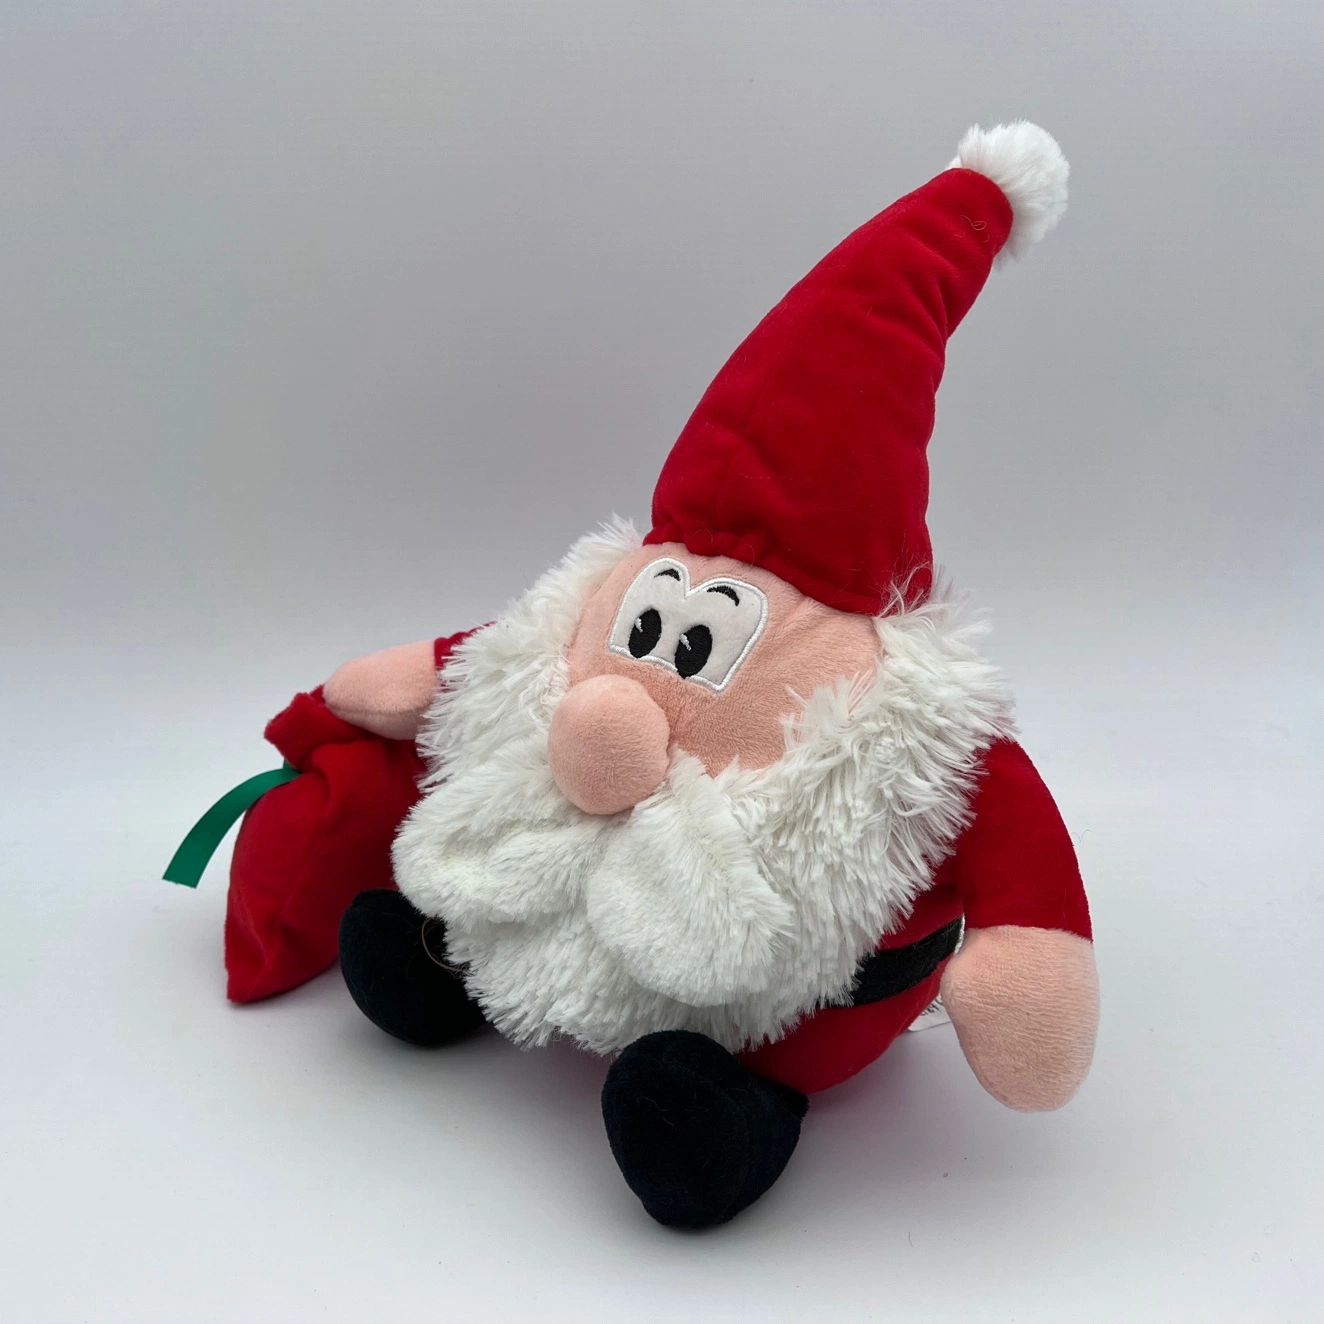 Santa Claus Toy heureuse nouvelle année décorations de Noël Le Père Noël Bonhomme de neige à Rennes Pendentif poupée jouet arbre Bricolage cadeau de Noël décorations d'accueil